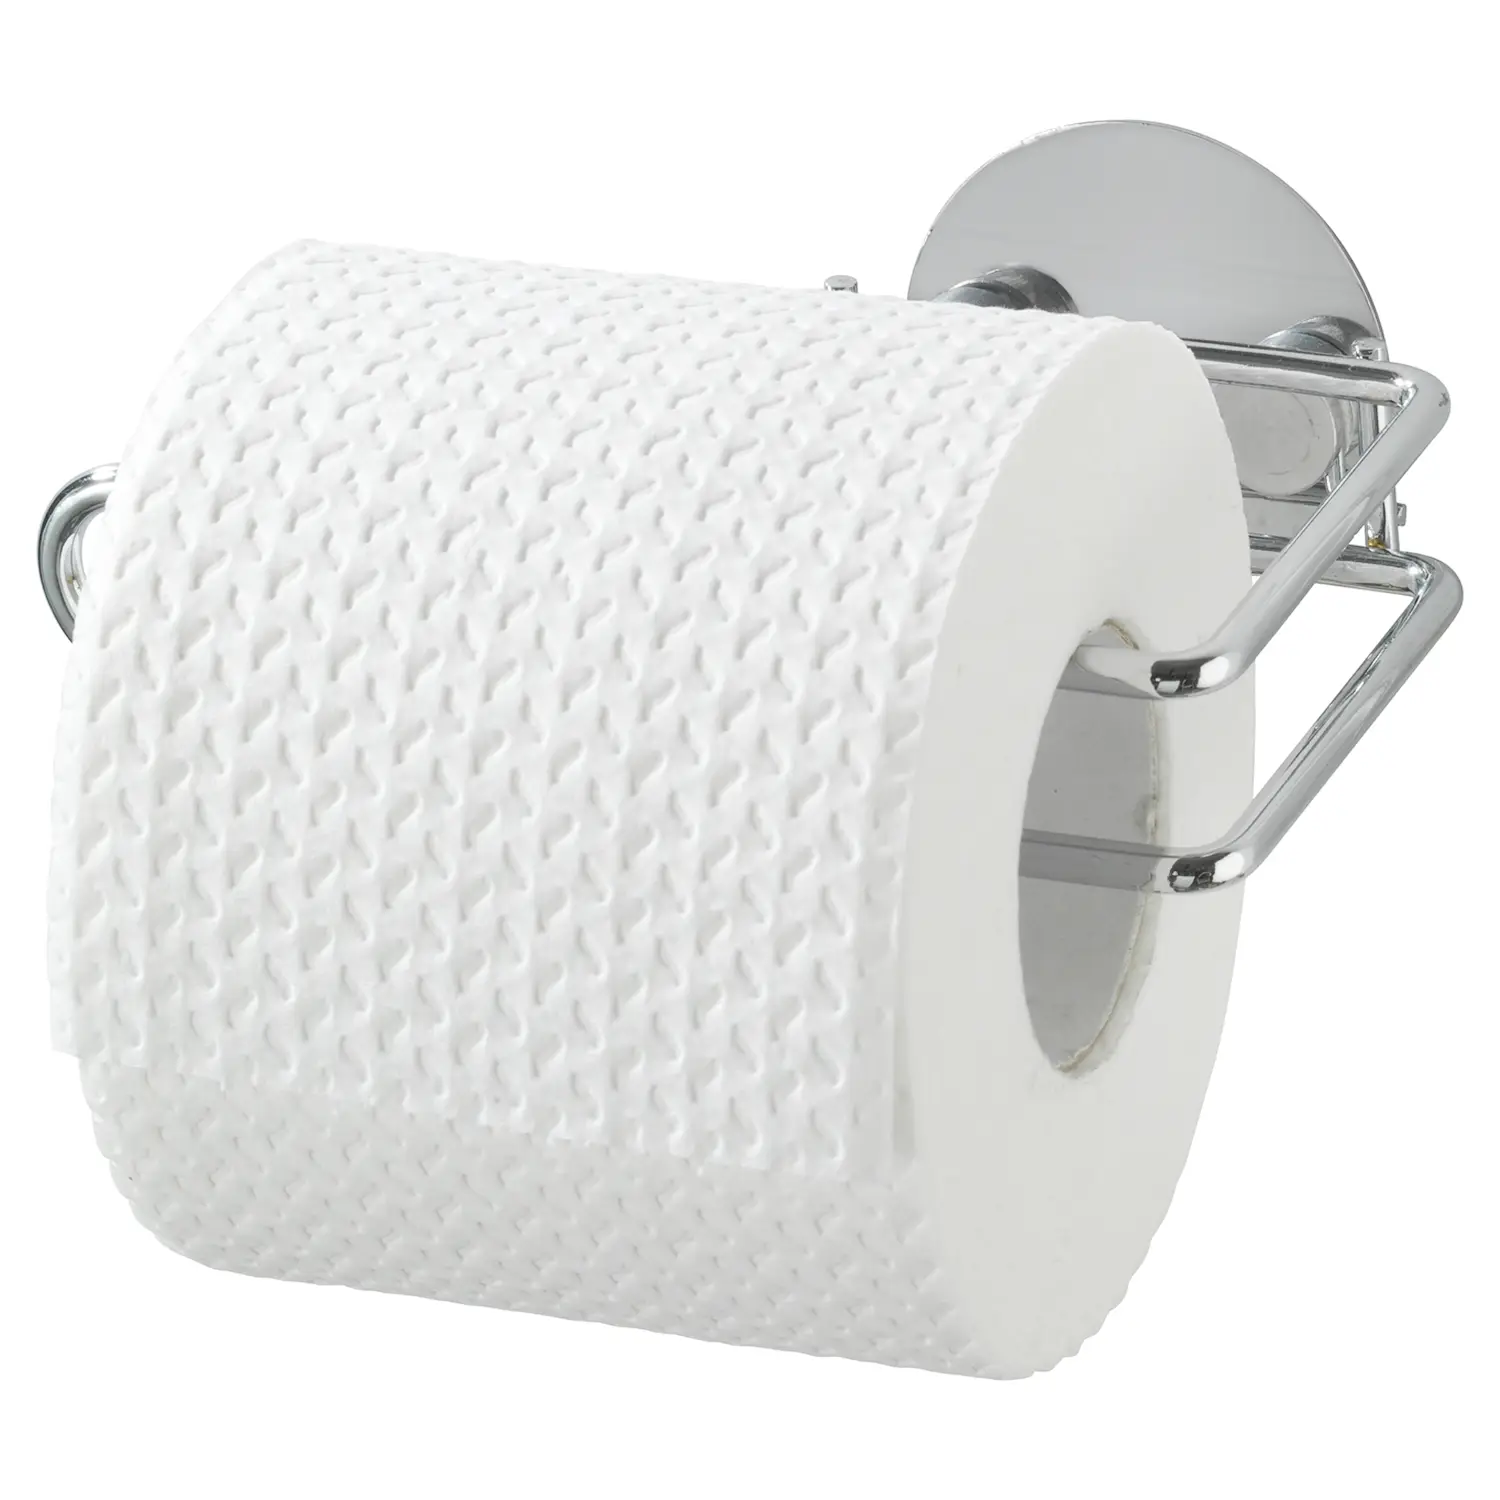 II Creerin Toilettenpapierrollenhalter